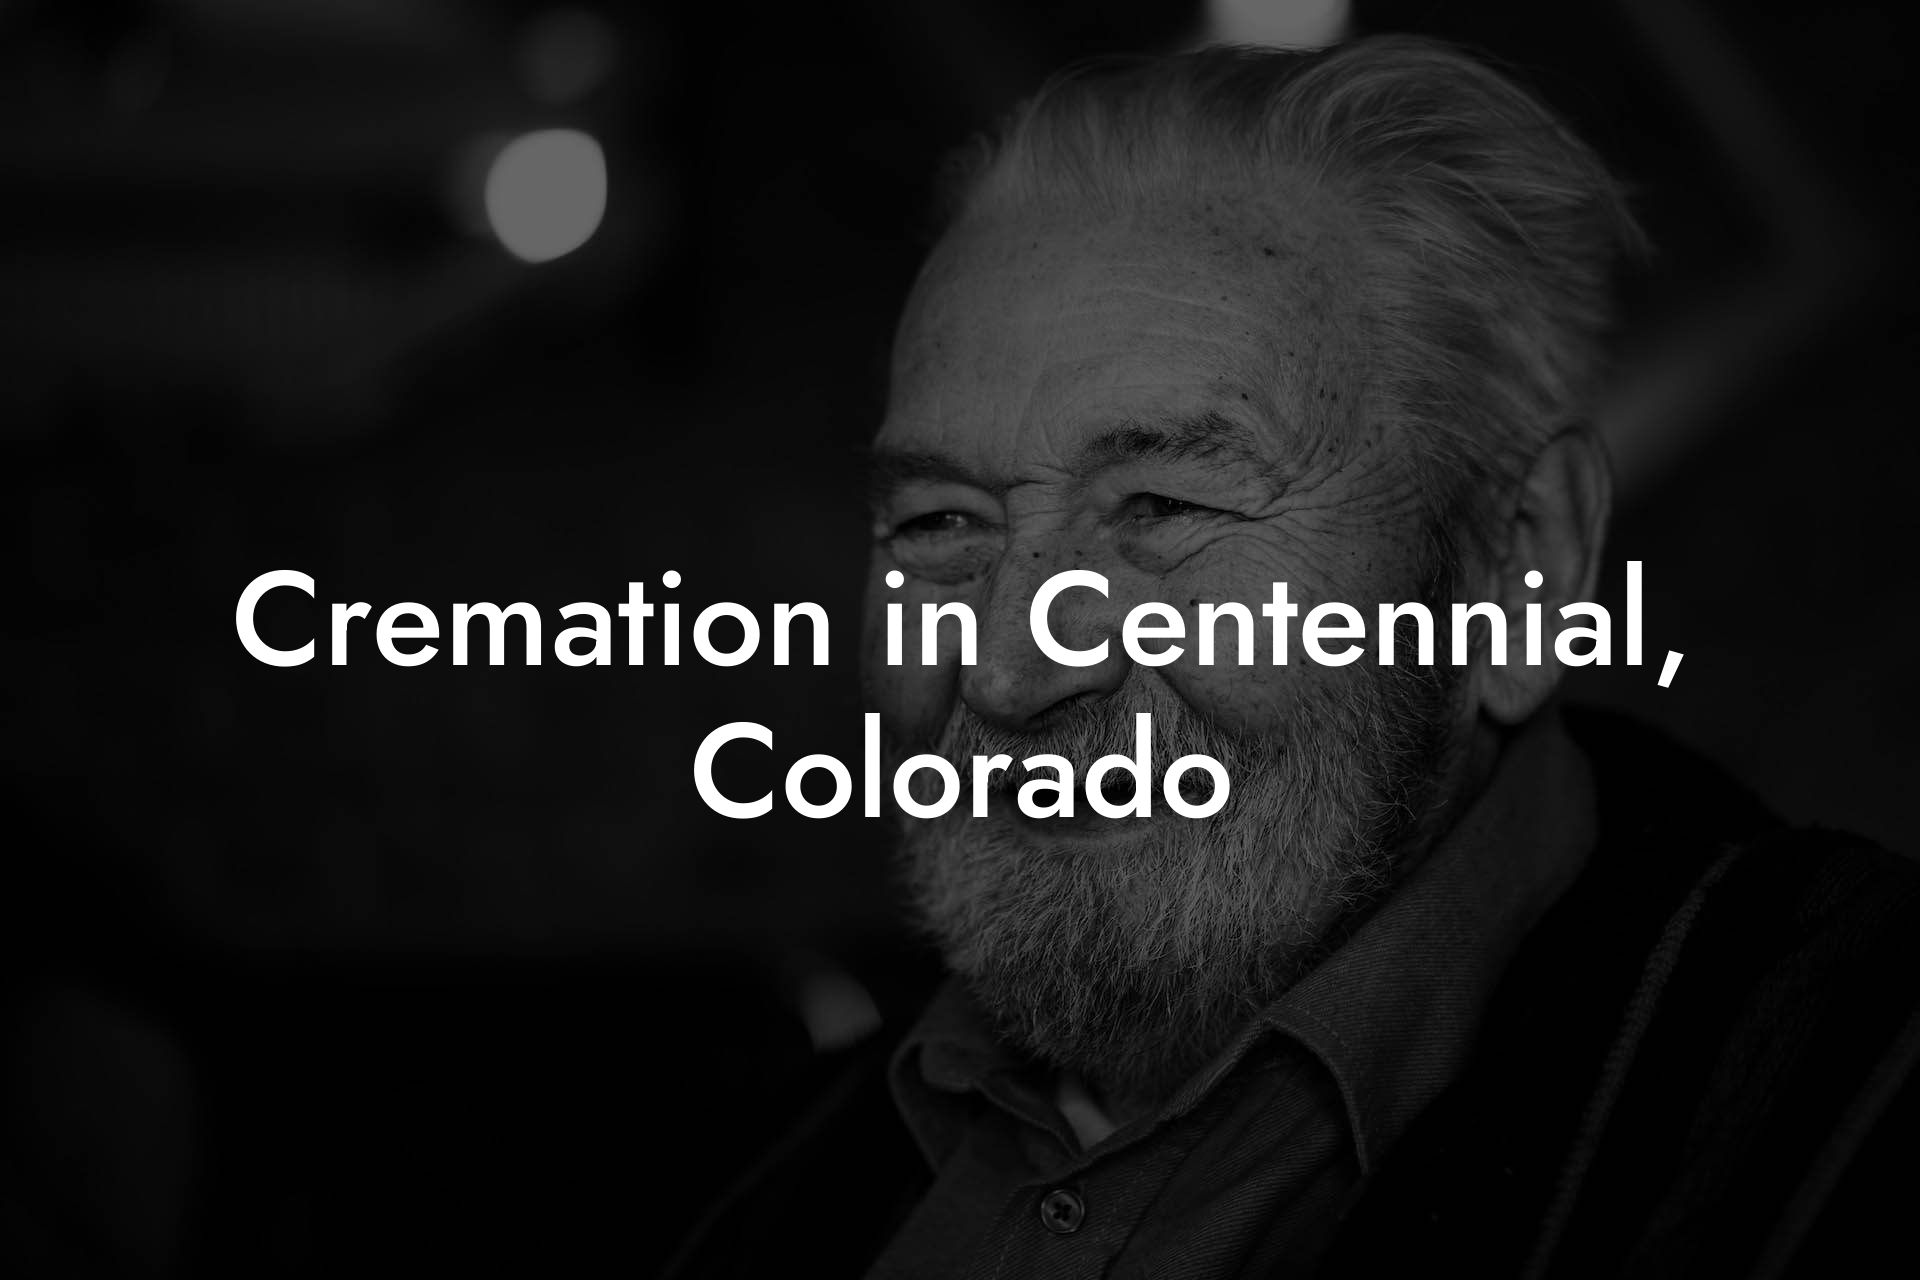 Cremation in Centennial, Colorado